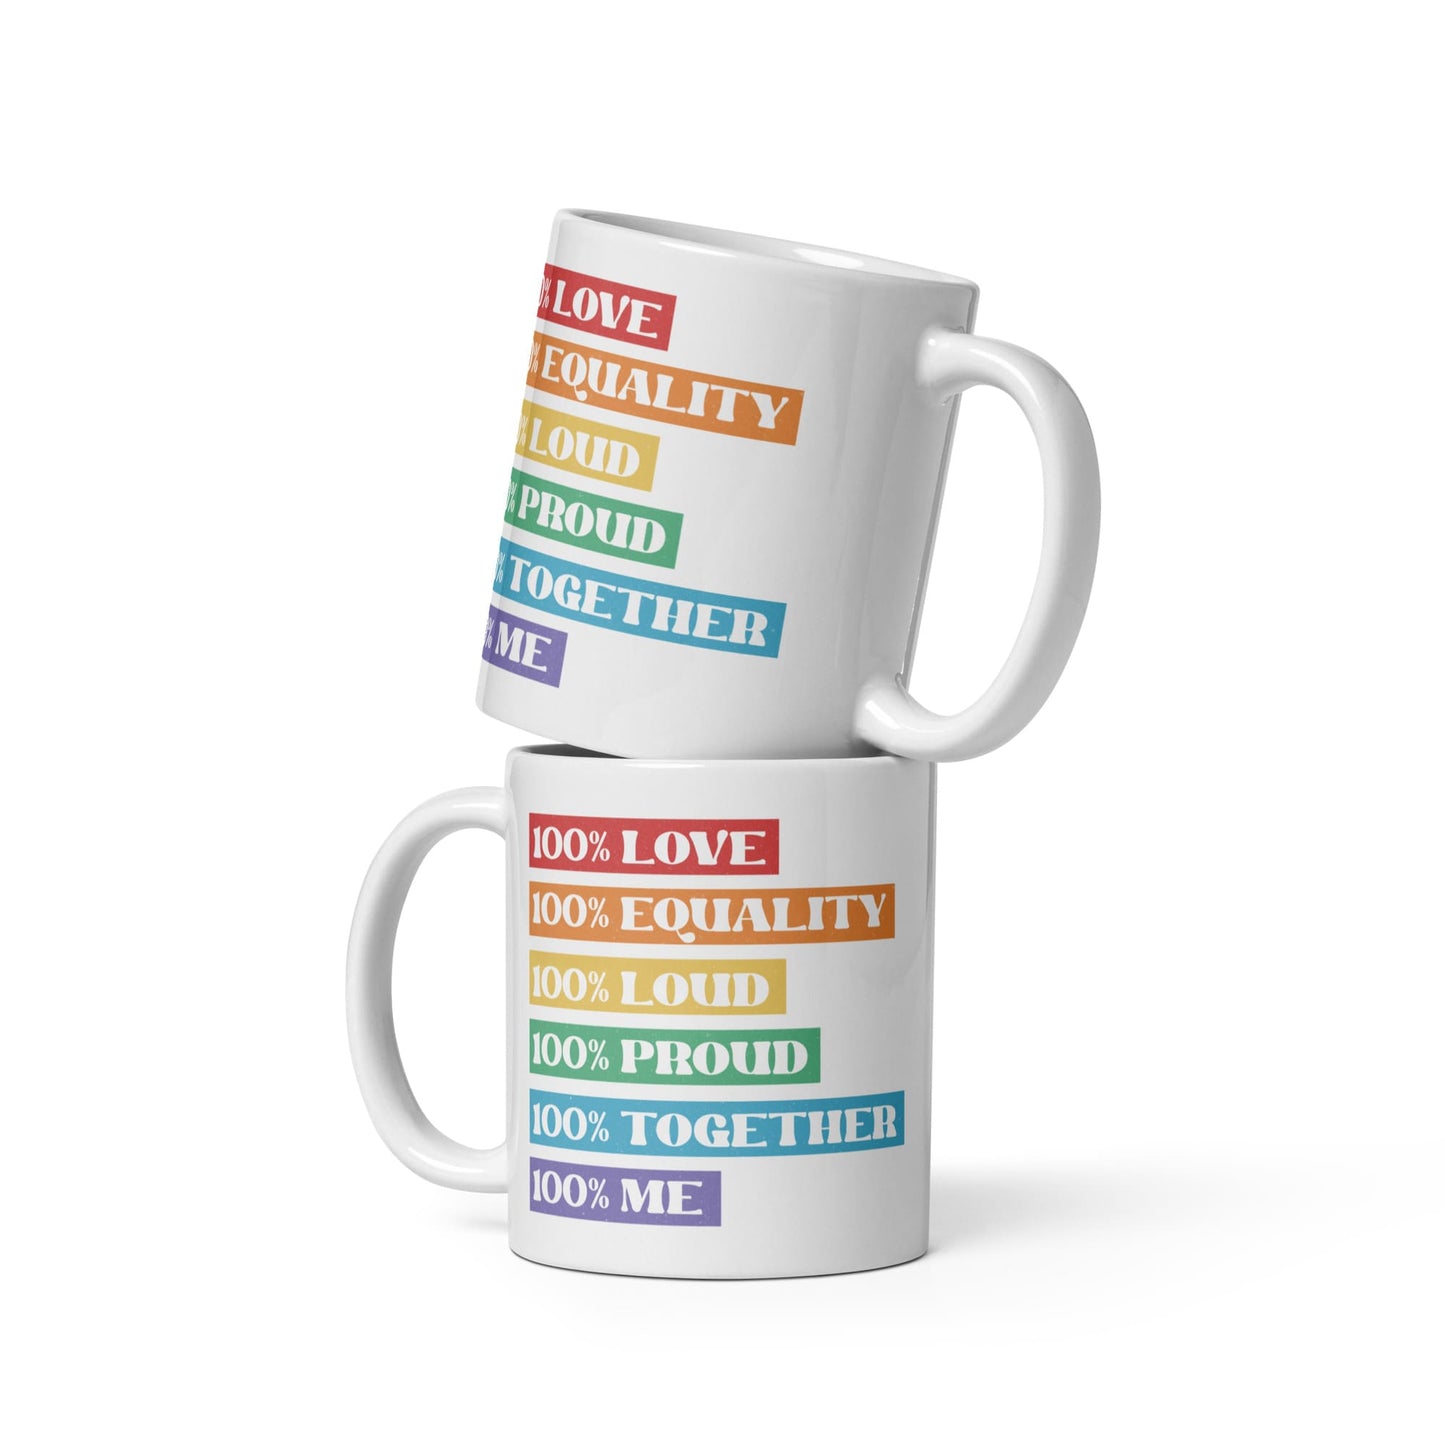 LGBTQ pride mug, LGBT awareness coffee or tea mug both sides